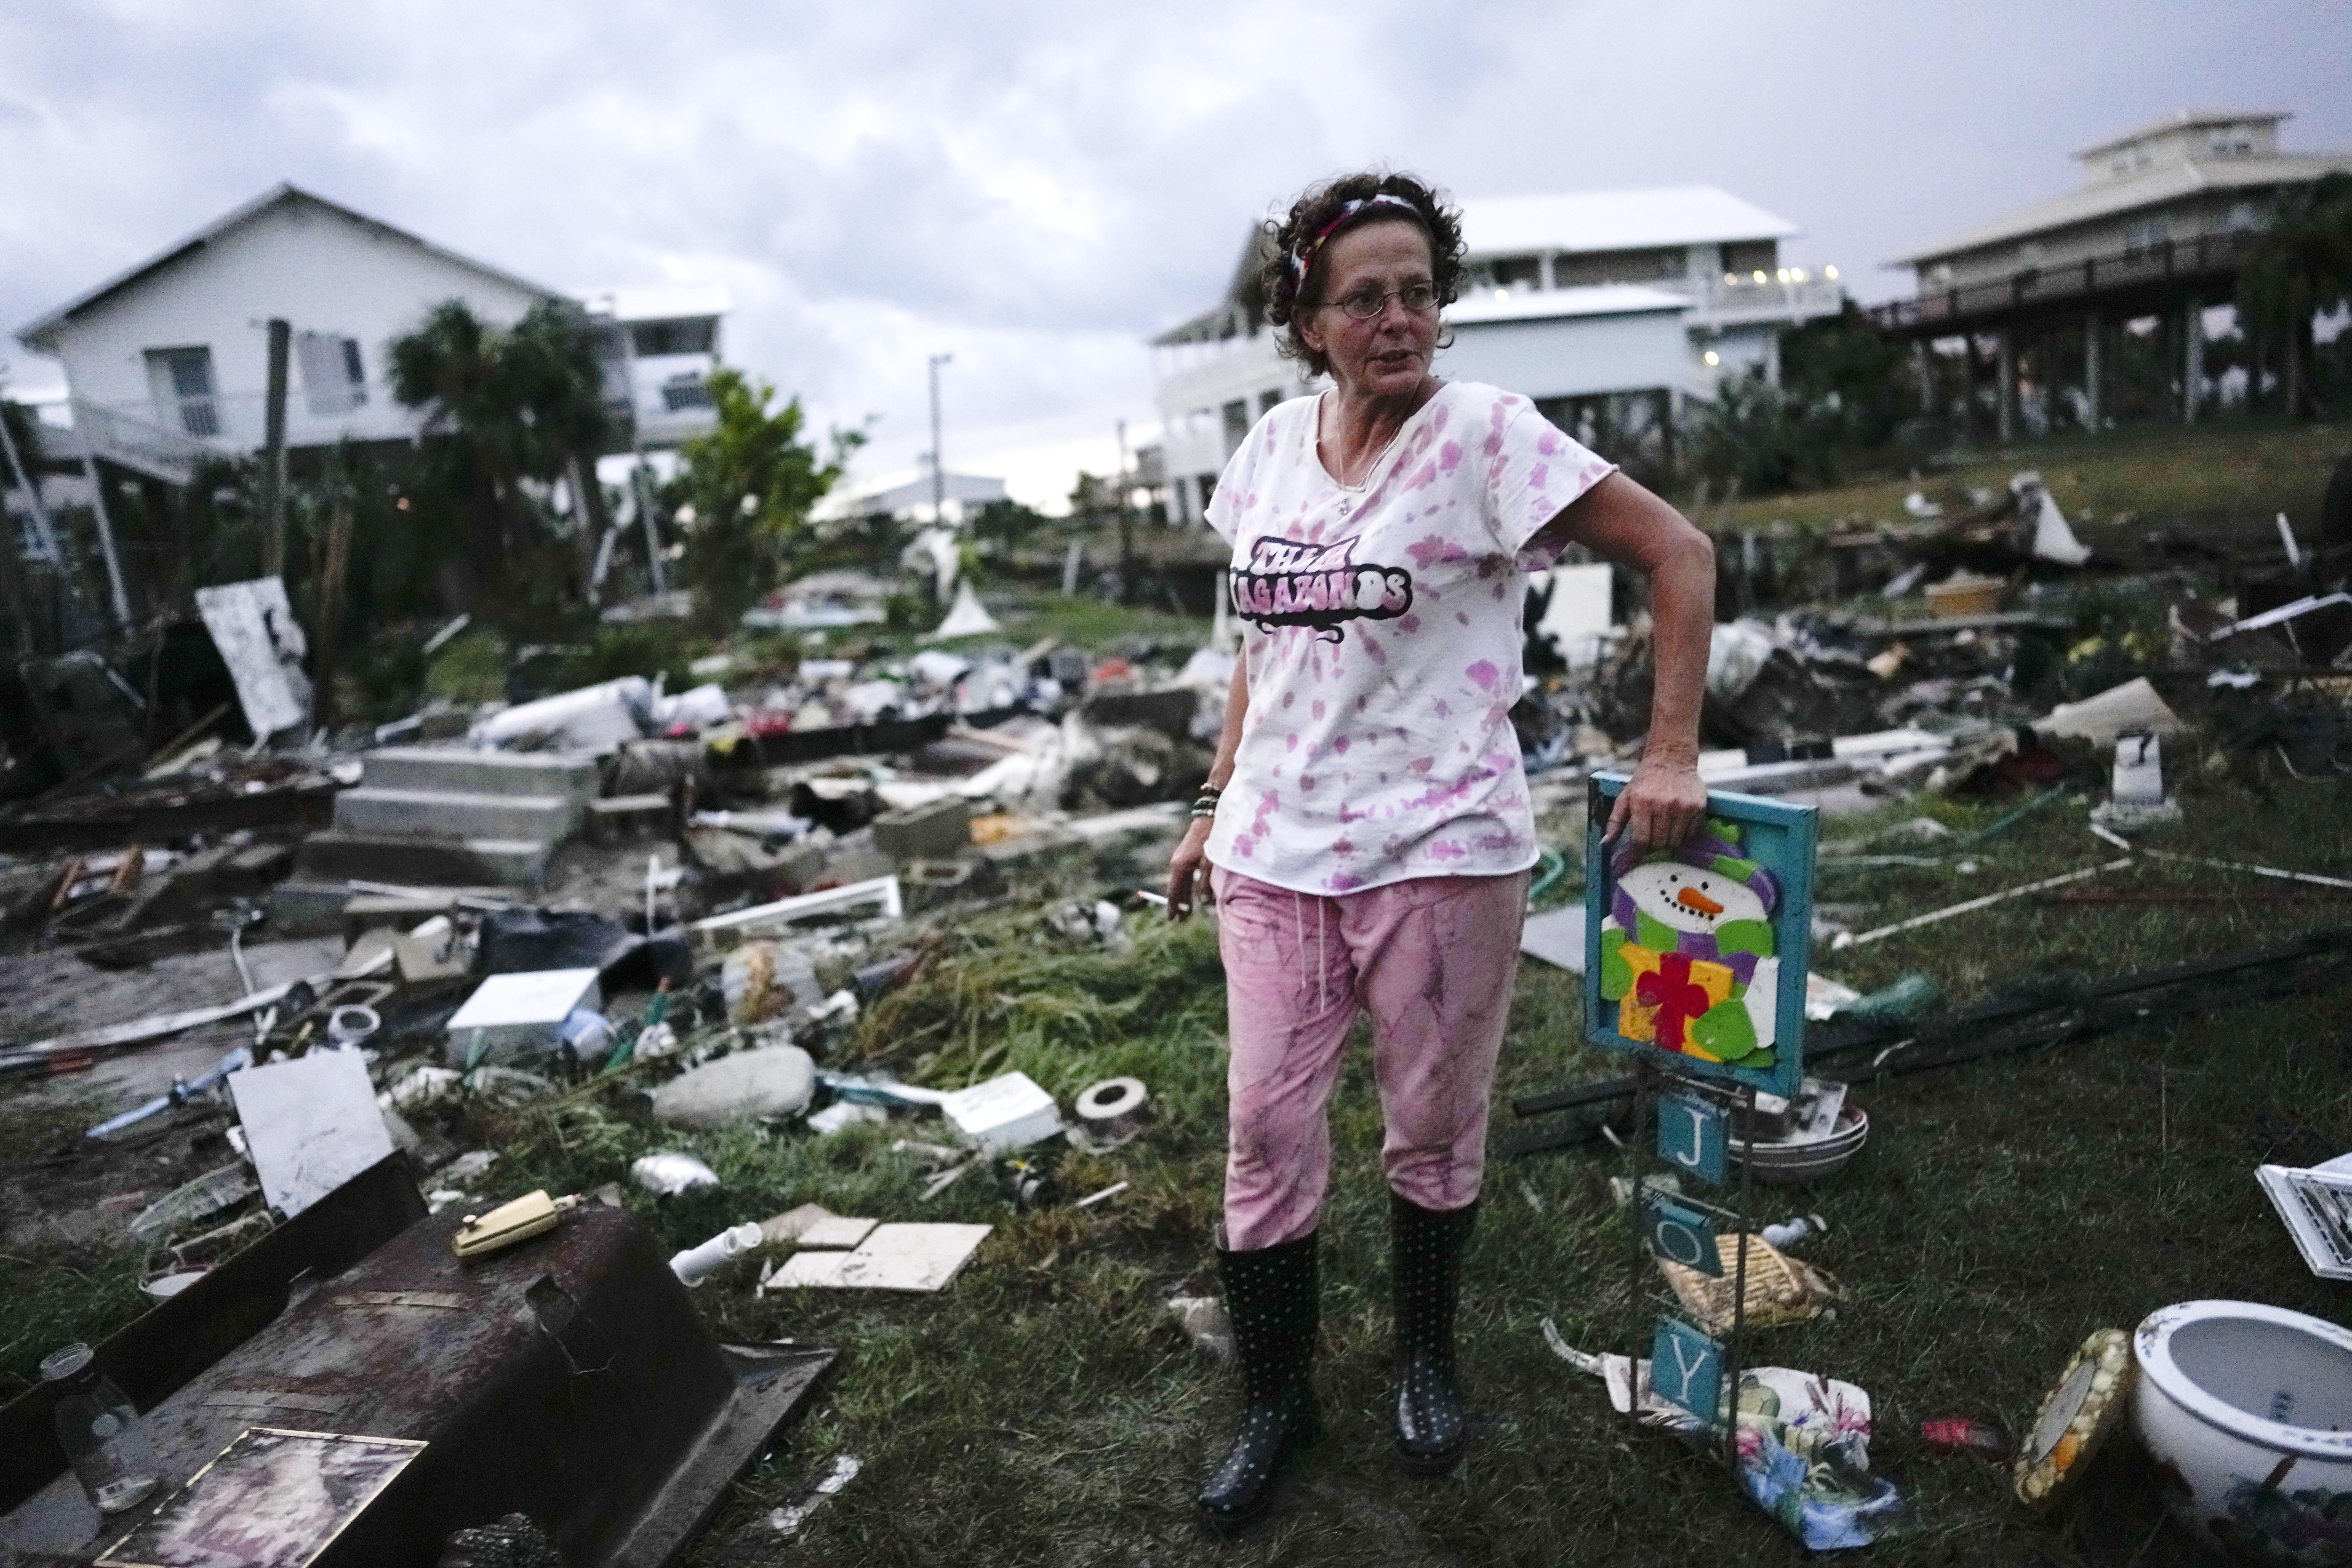 ΗΠΑ: Η καταιγίδα Ιντάλια συνεχίζει την πορεία της προς τα νοτιοανατολικά, ενώ η Φλόριντα μετρά τις ζημιές της